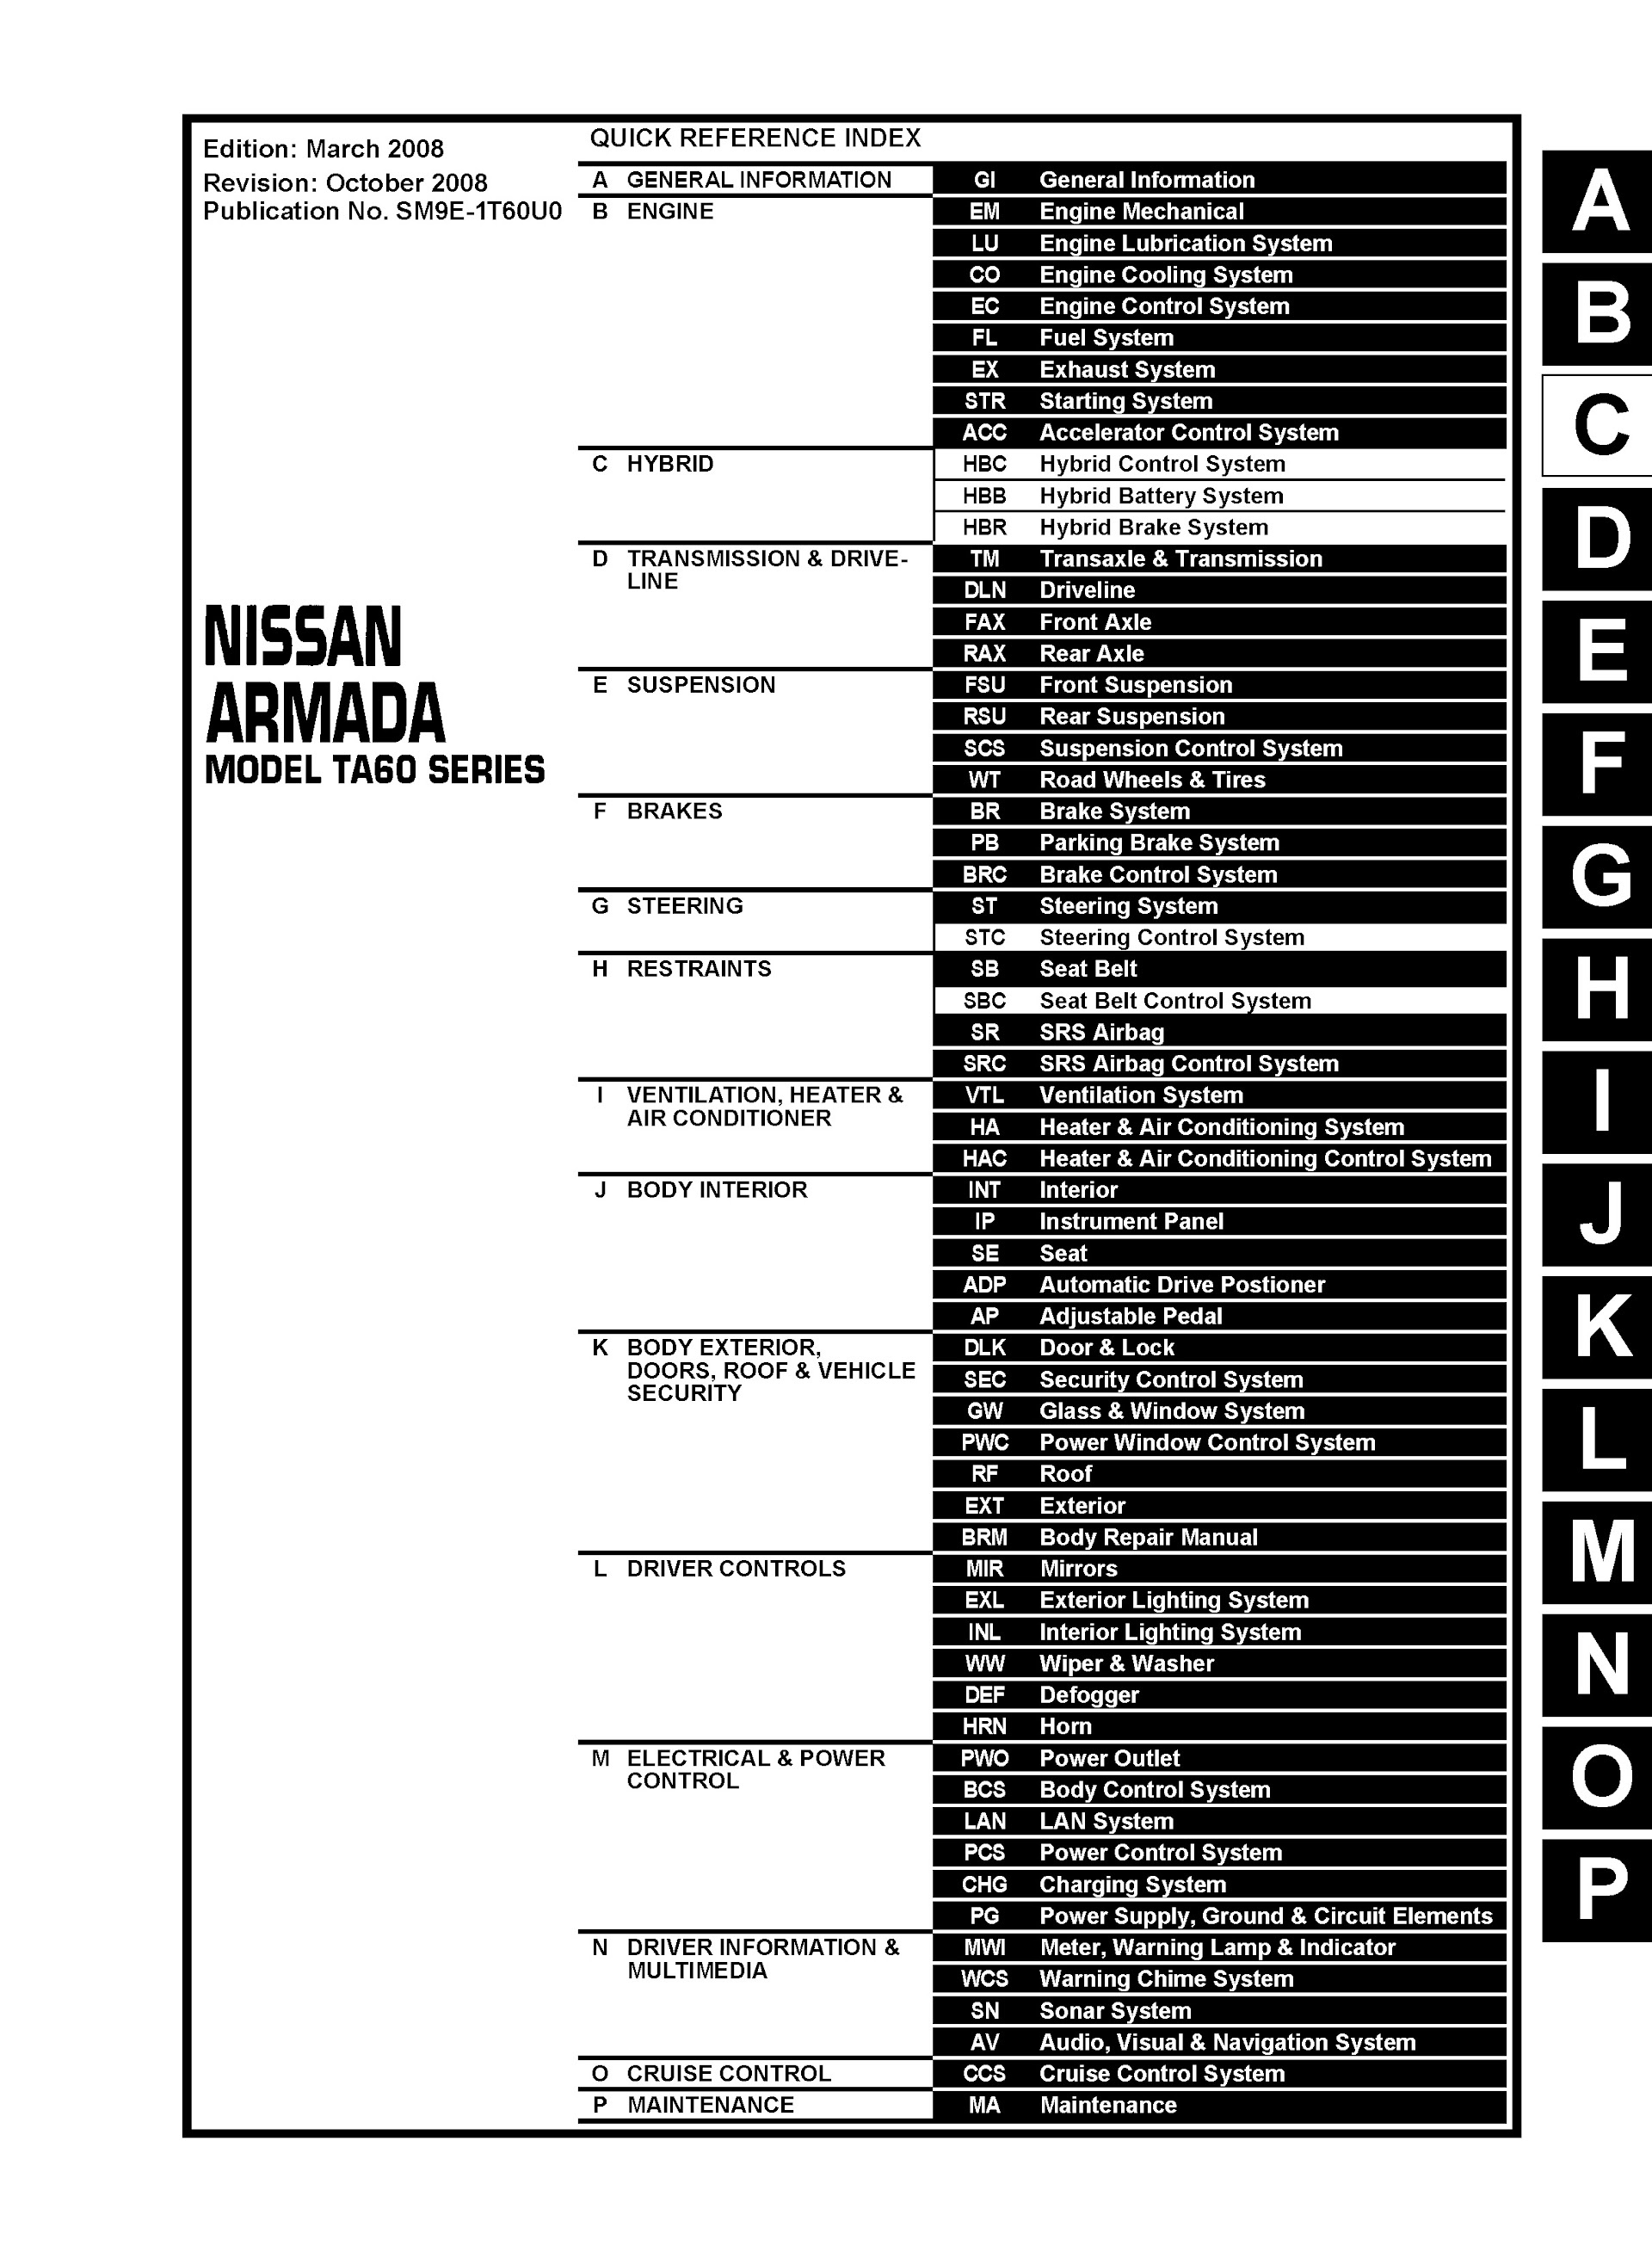 Table of Contents 2009 Nissan Armada Repair Manual